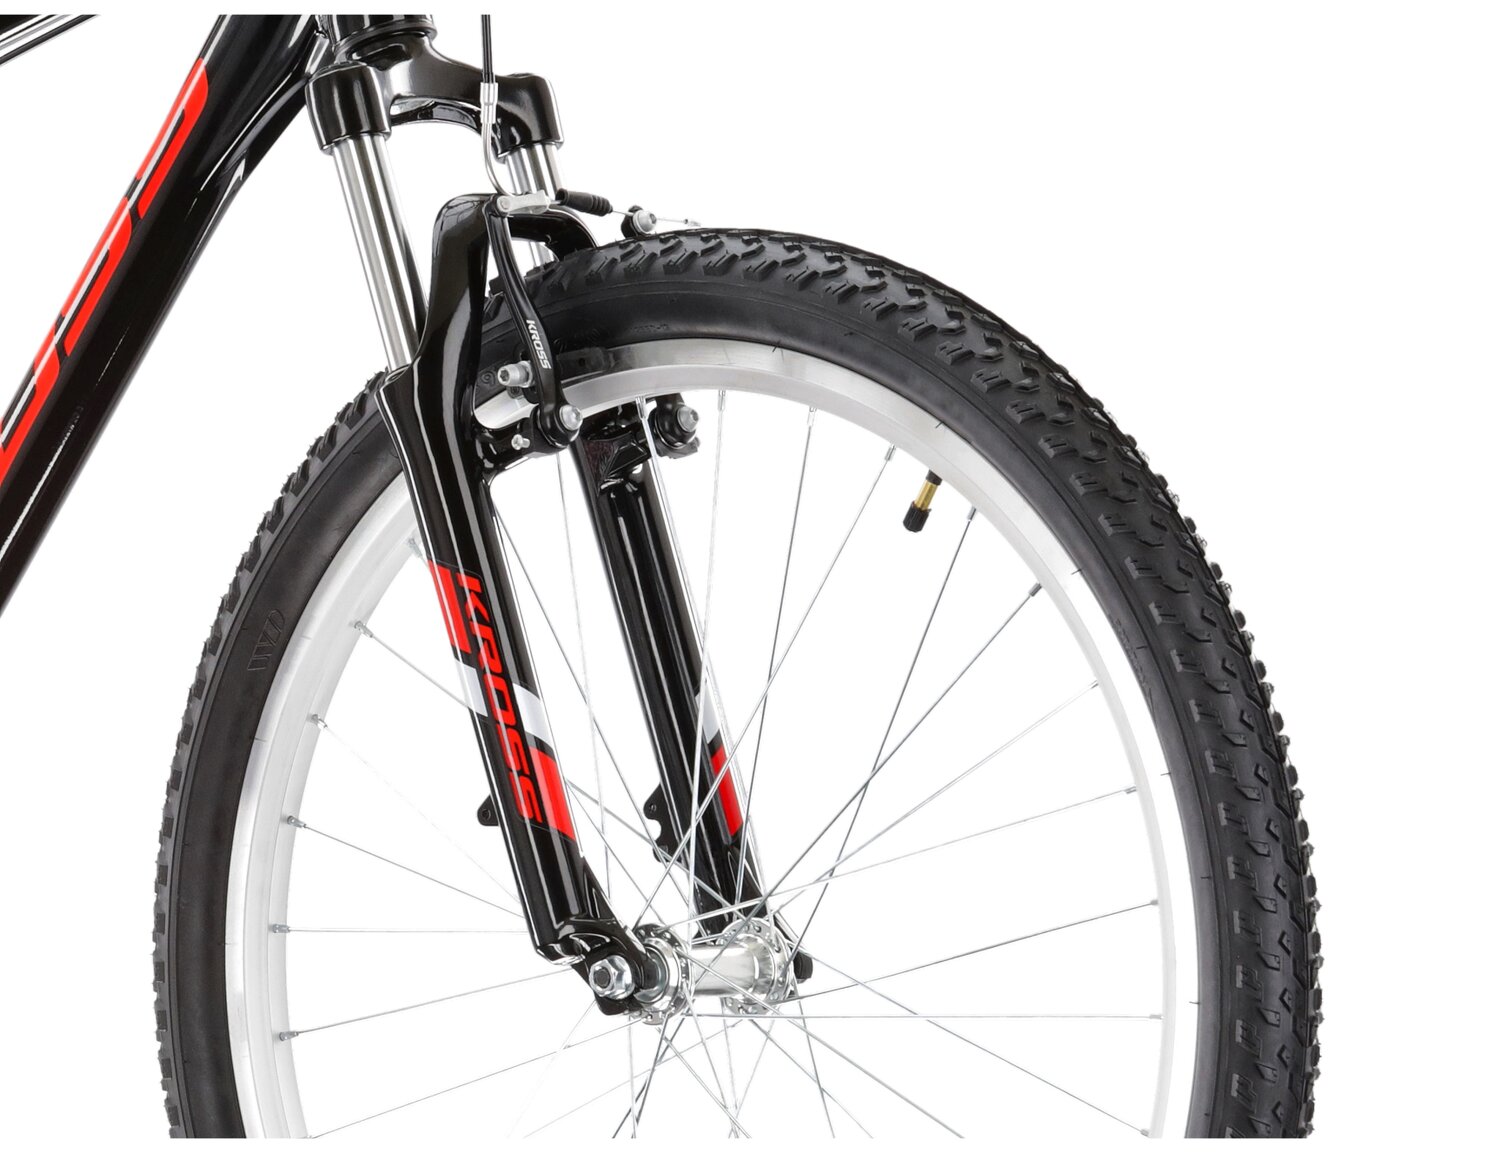  Aluminowa rama, amortyzowany widelec Zoom Forgo656 o skoku 80mm oraz opony o szerokości 2,1 cala w rowerze górskim MTB KROSS Hexagon 